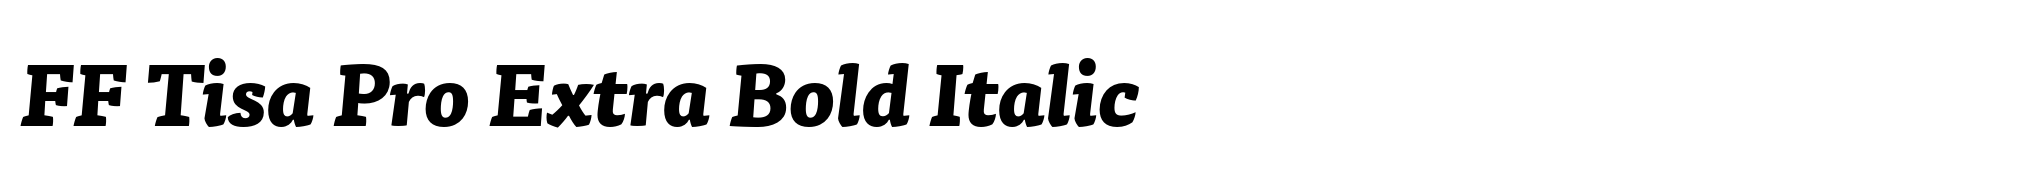 FF Tisa Pro Extra Bold Italic image